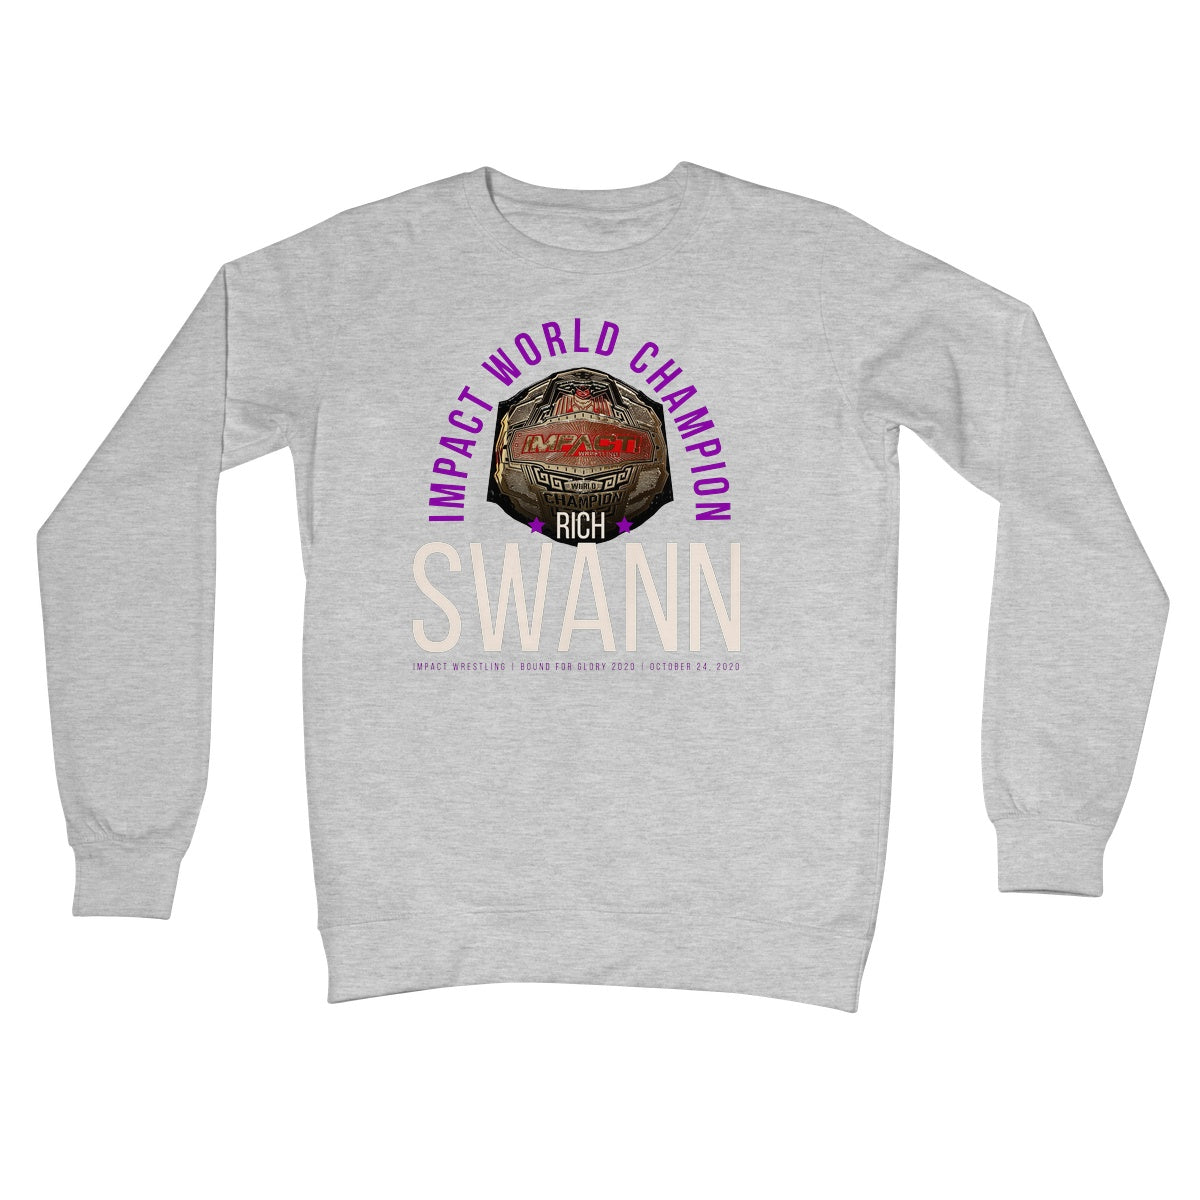 Rich Swann Champ Crew Neck Sweatshirt